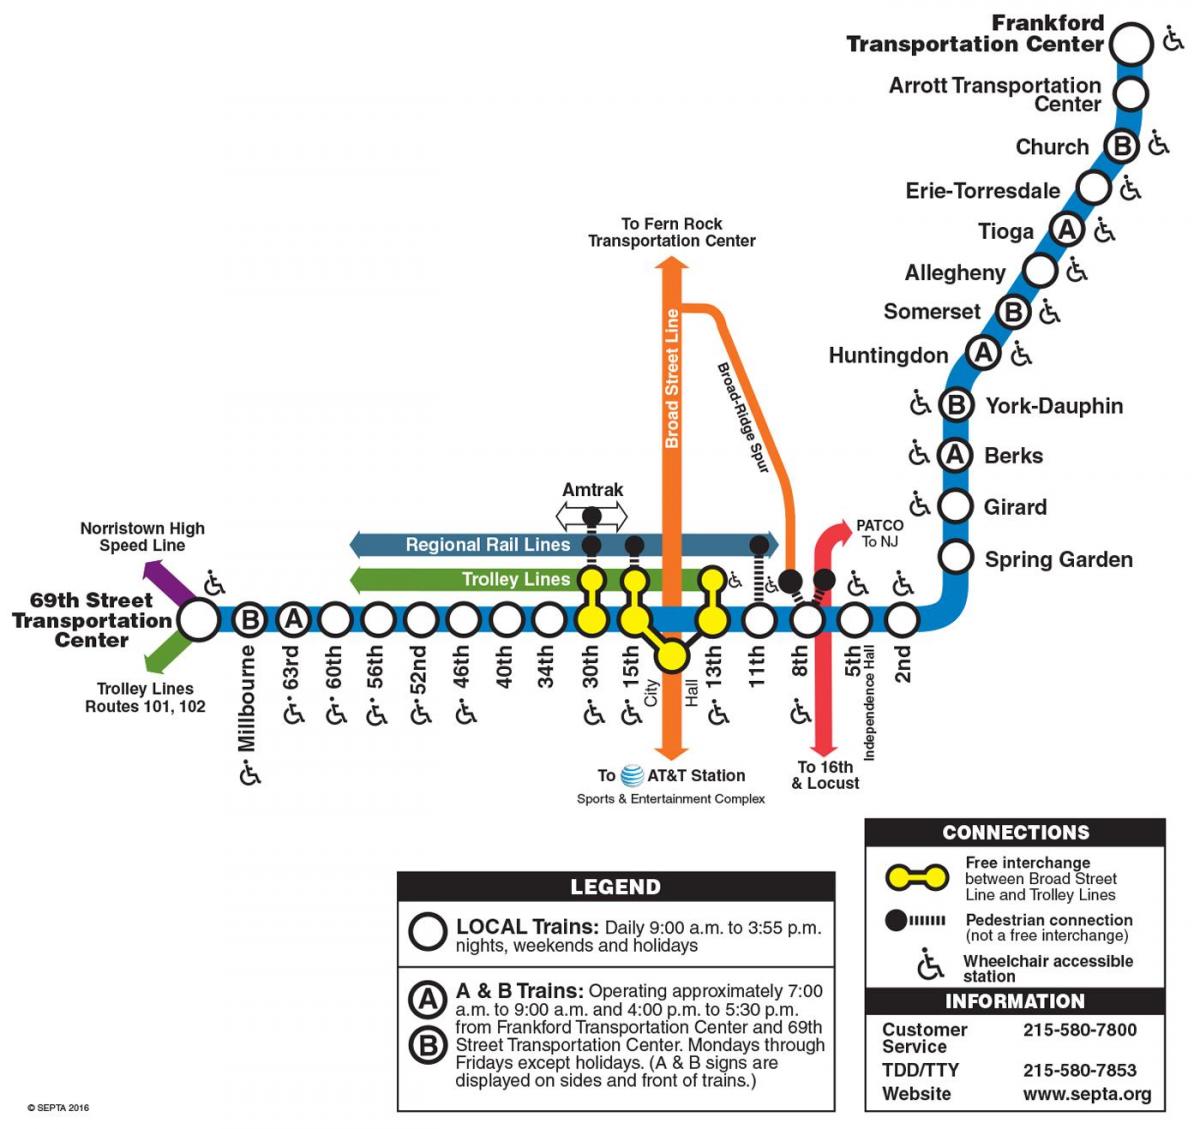 zemljevid trgu frankford line